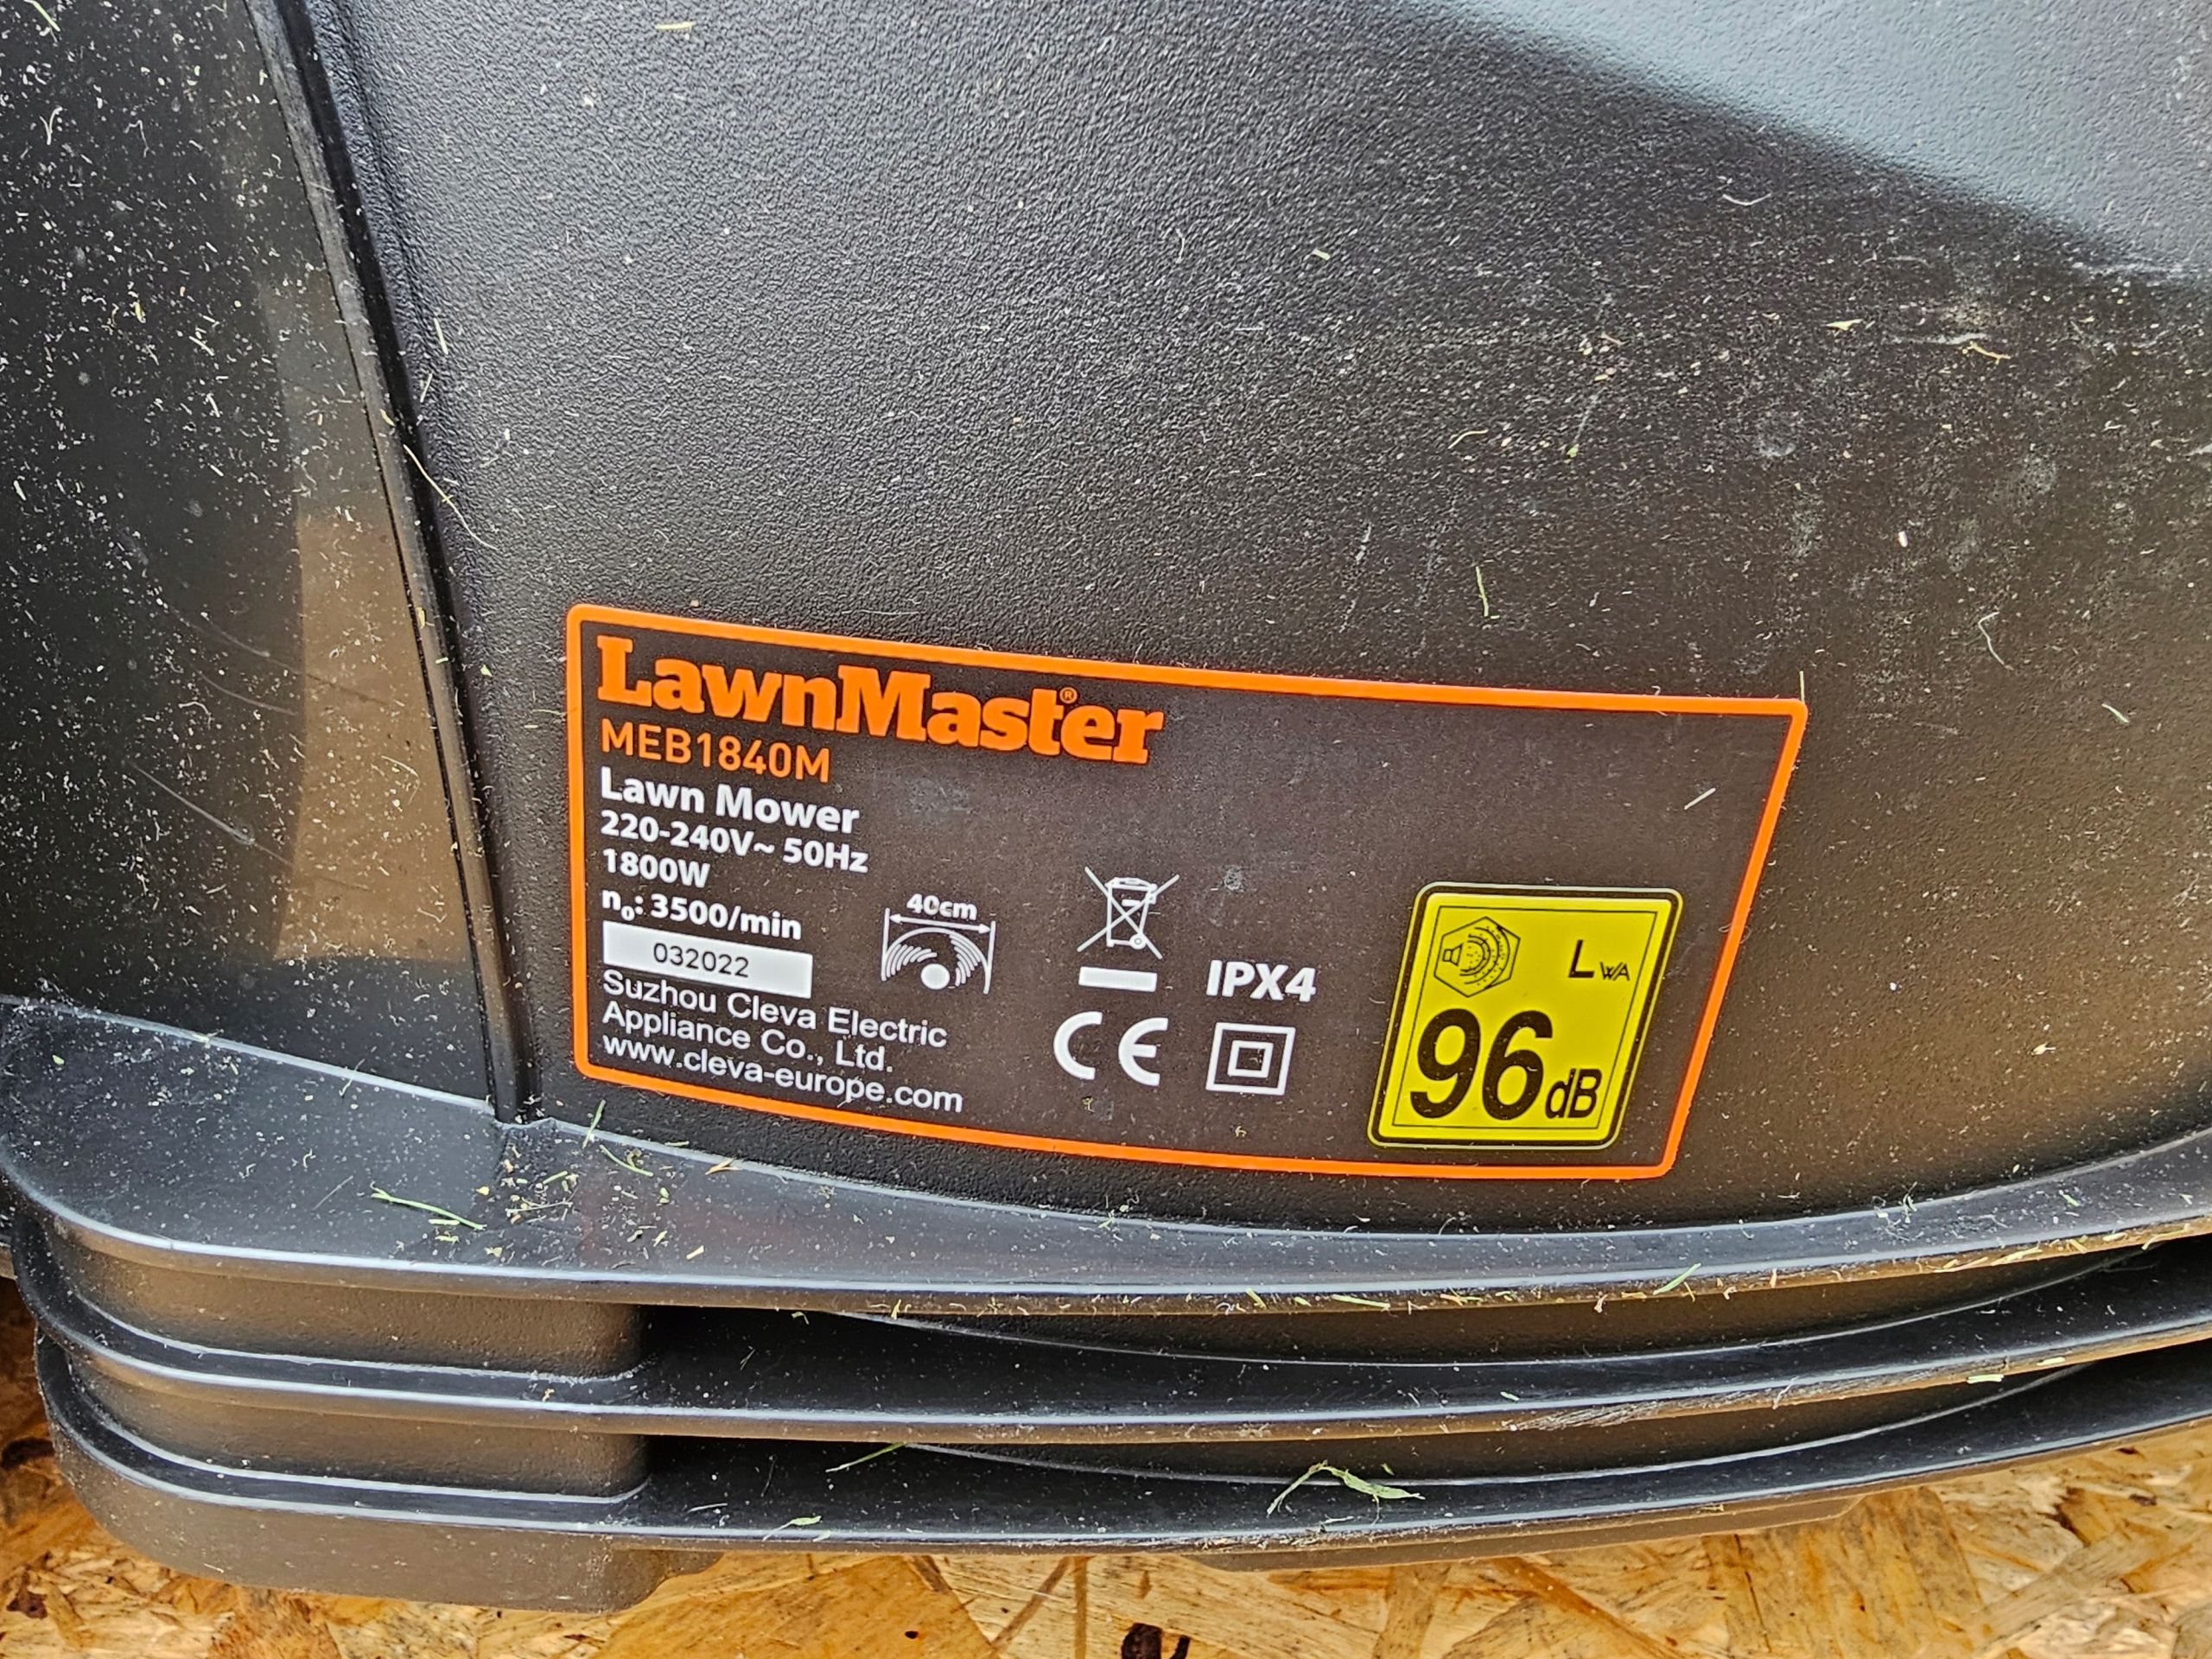 Kosiarka elektryczna LawnMaster 1600 W 40 l Meb1840m do trawy 1800w